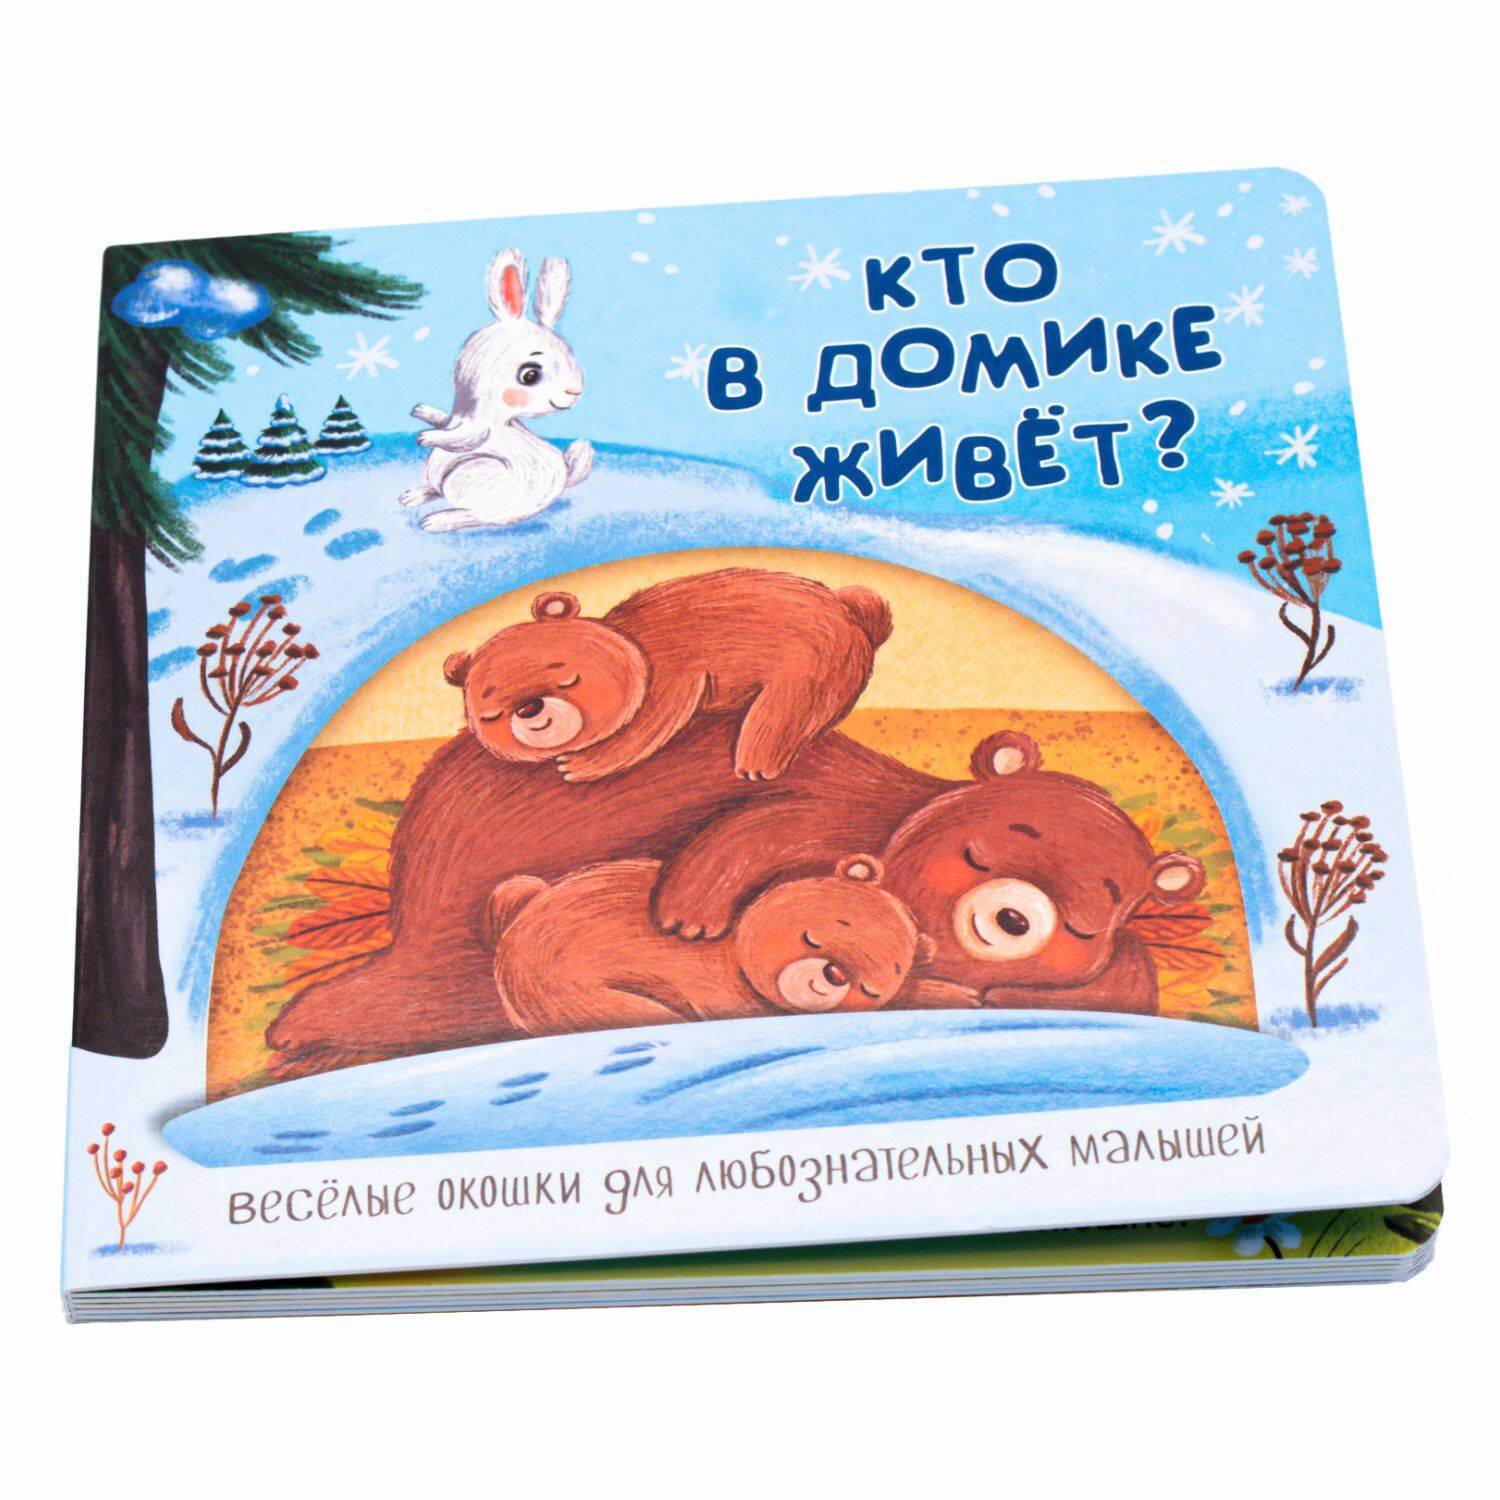 Федулова Анна Алексеевна - Веселые окошки для любознательных малышей. Книжка с двойными окошками. "Кто в домике живёт?"